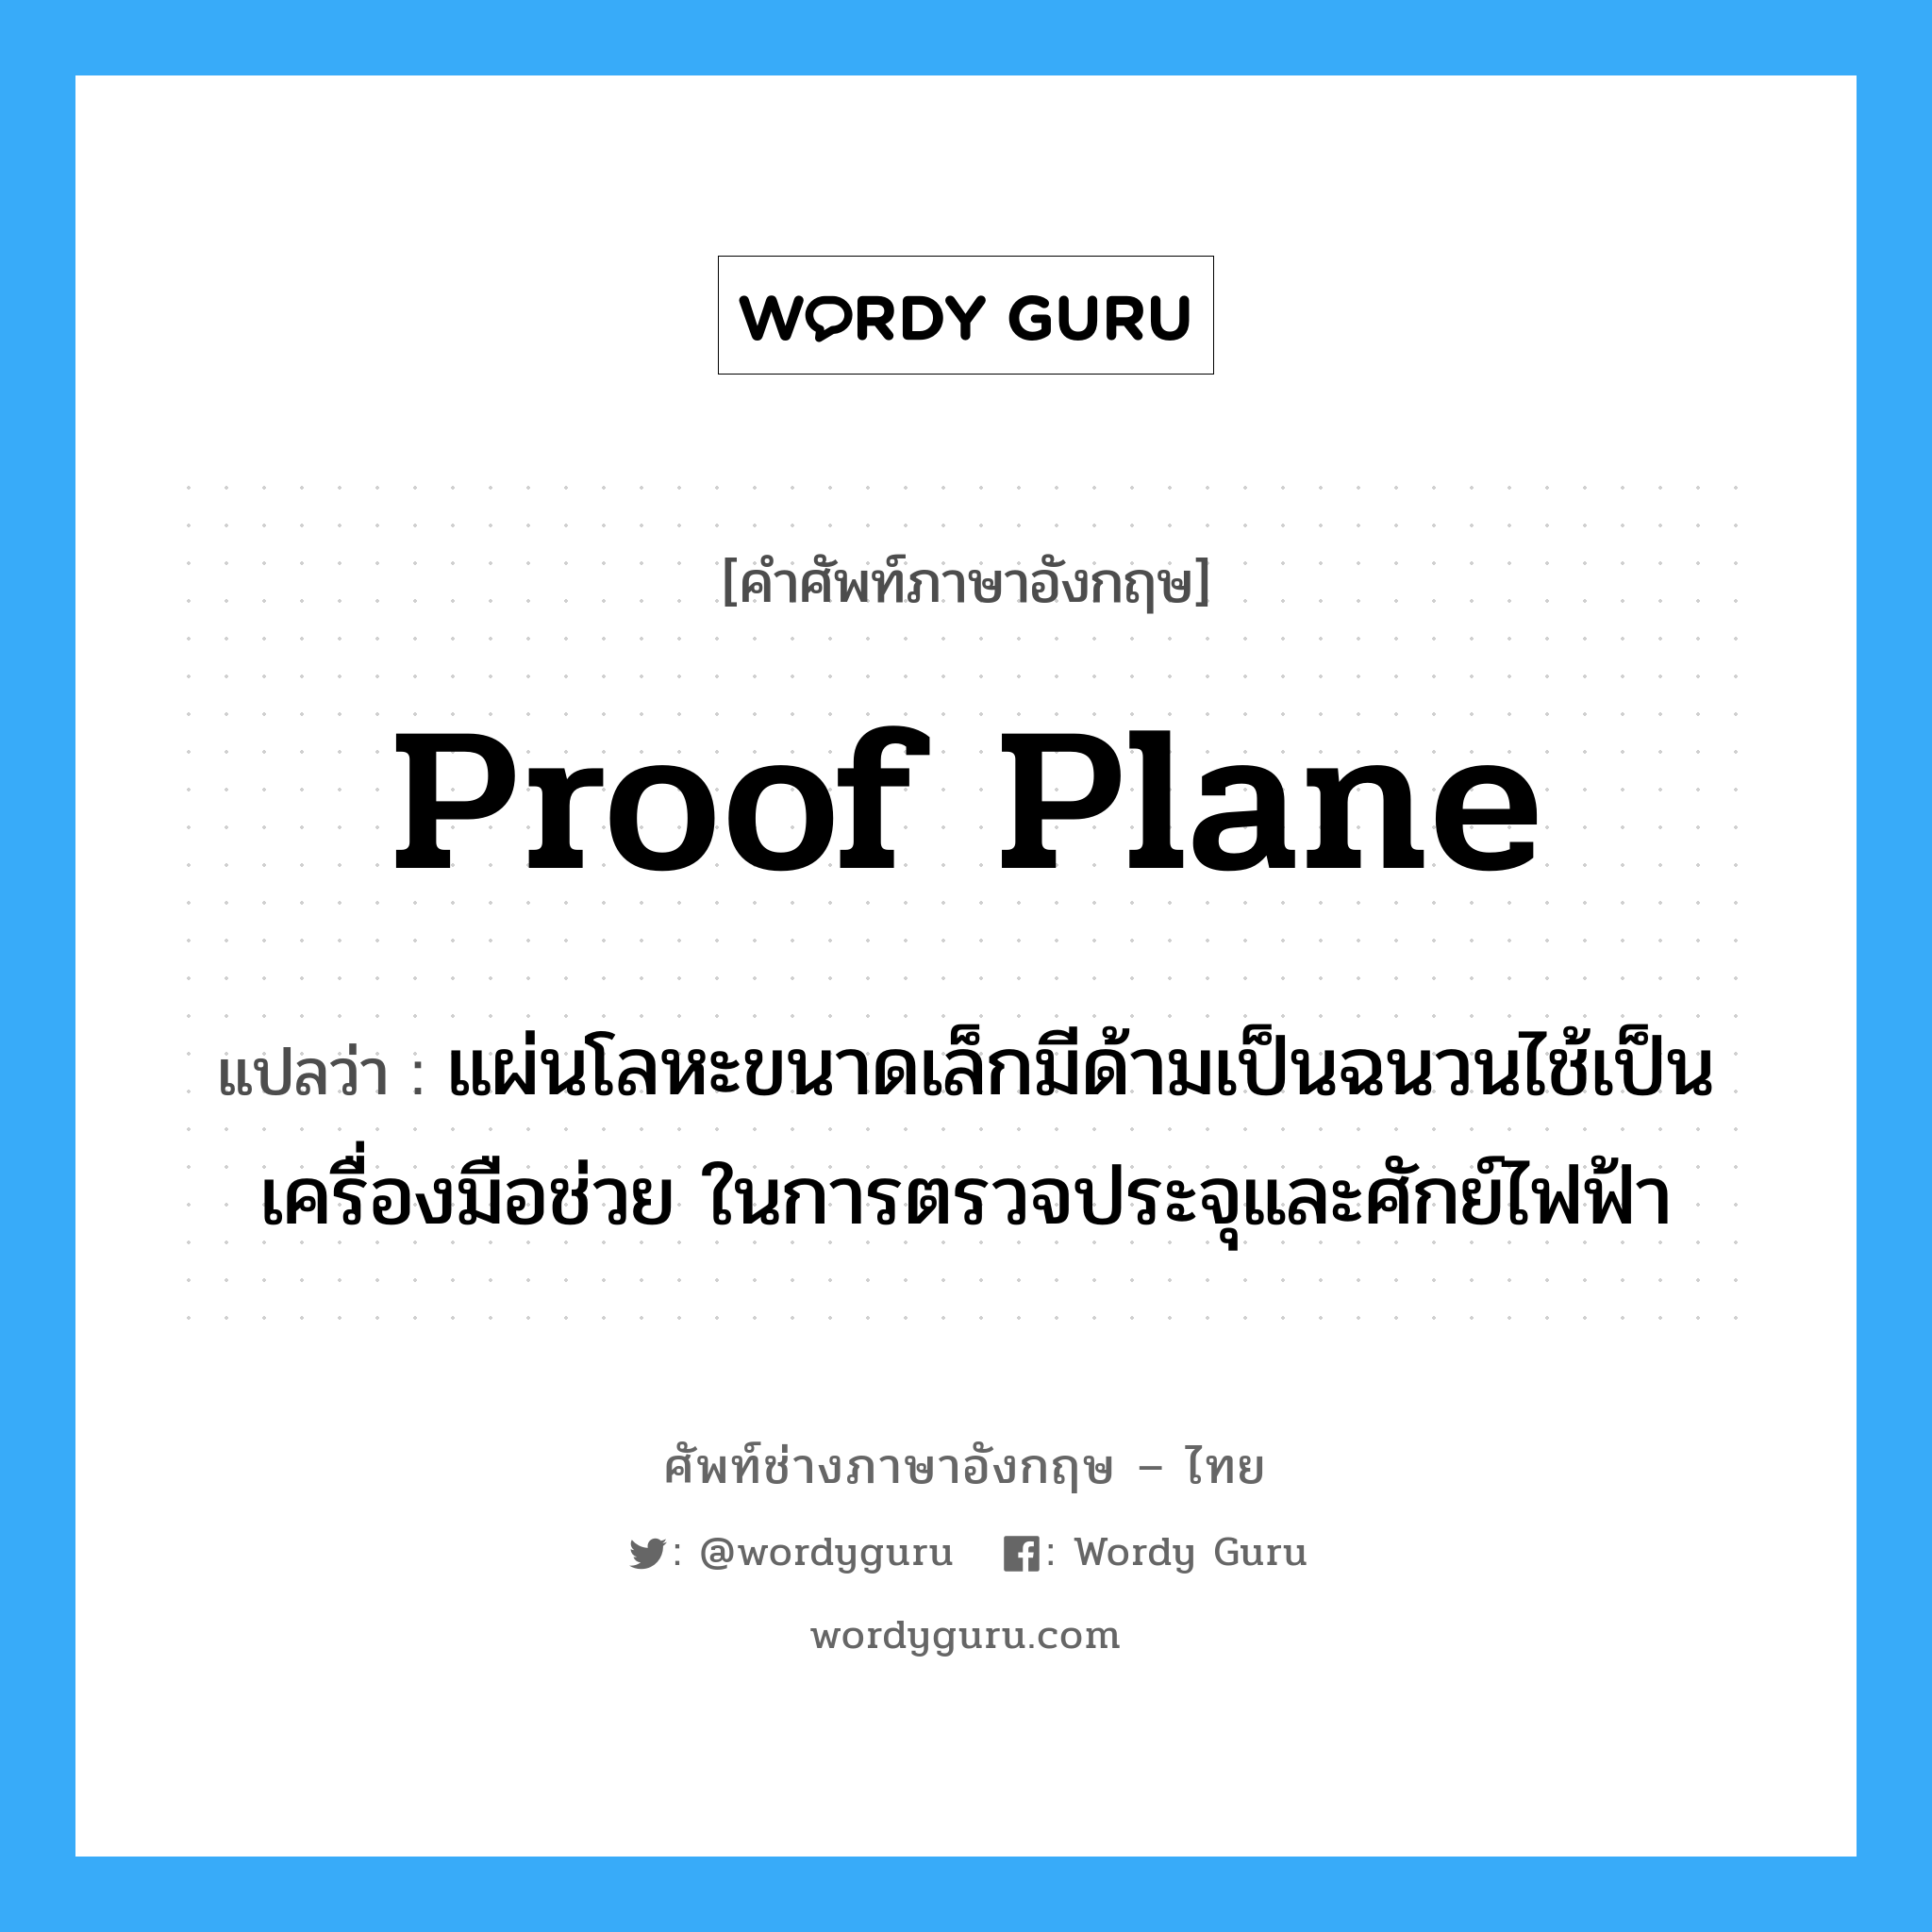 proof plane แปลว่า?, คำศัพท์ช่างภาษาอังกฤษ - ไทย proof plane คำศัพท์ภาษาอังกฤษ proof plane แปลว่า แผ่นโลหะขนาดเล็กมีด้ามเป็นฉนวนไช้เป็นเครื่องมือช่วย ในการตรวจประจุและศักย์ไฟฟ้า